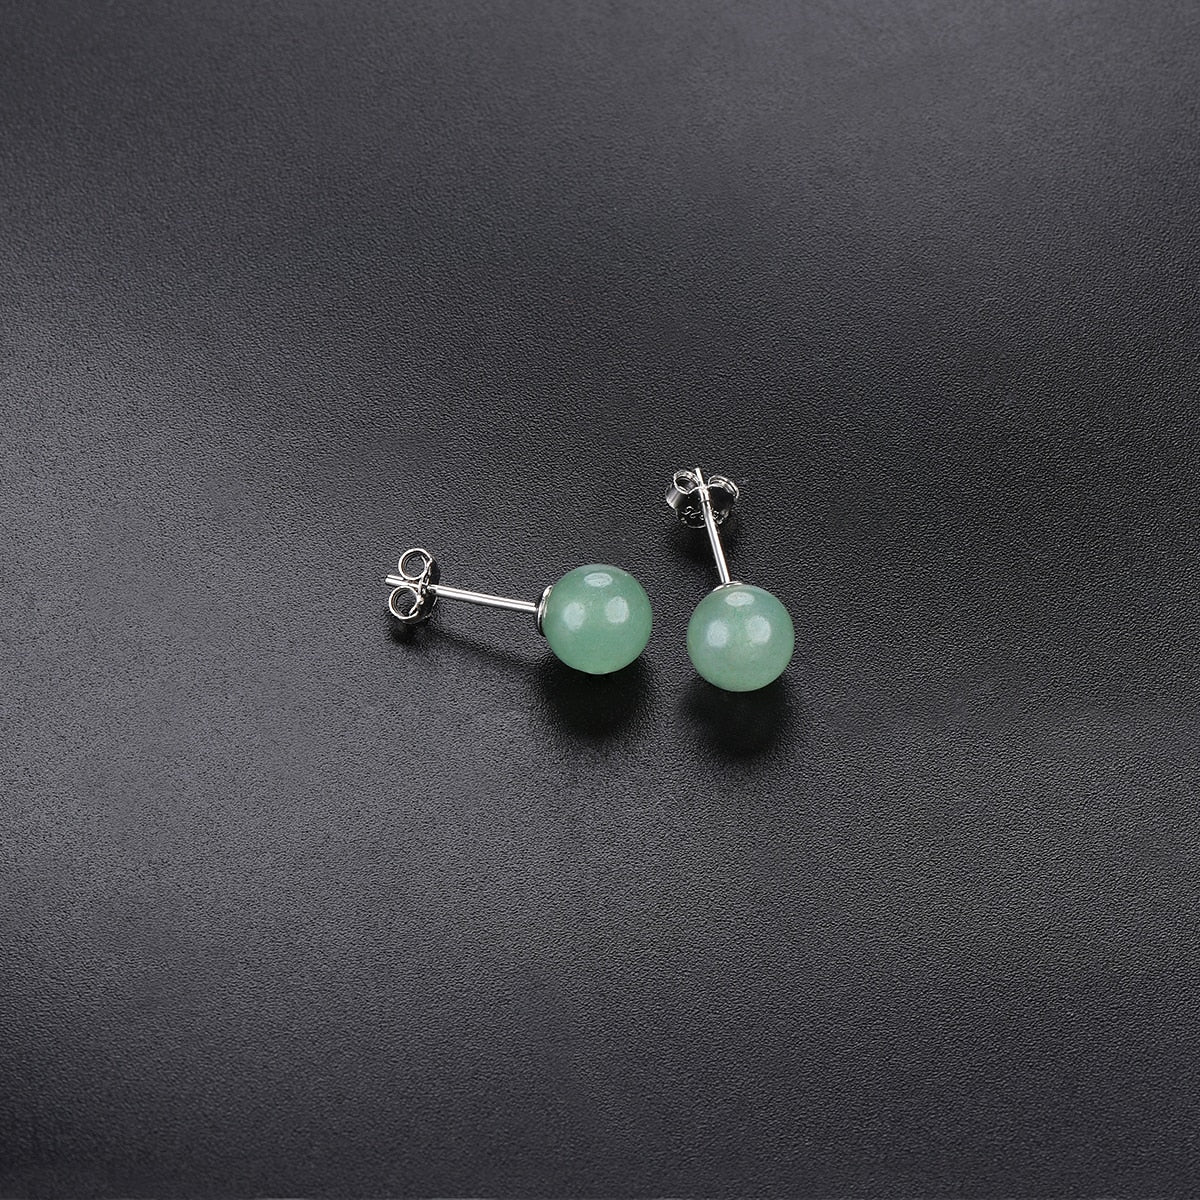 Gemstones 6mm Green Jade Silver Stud Earrings